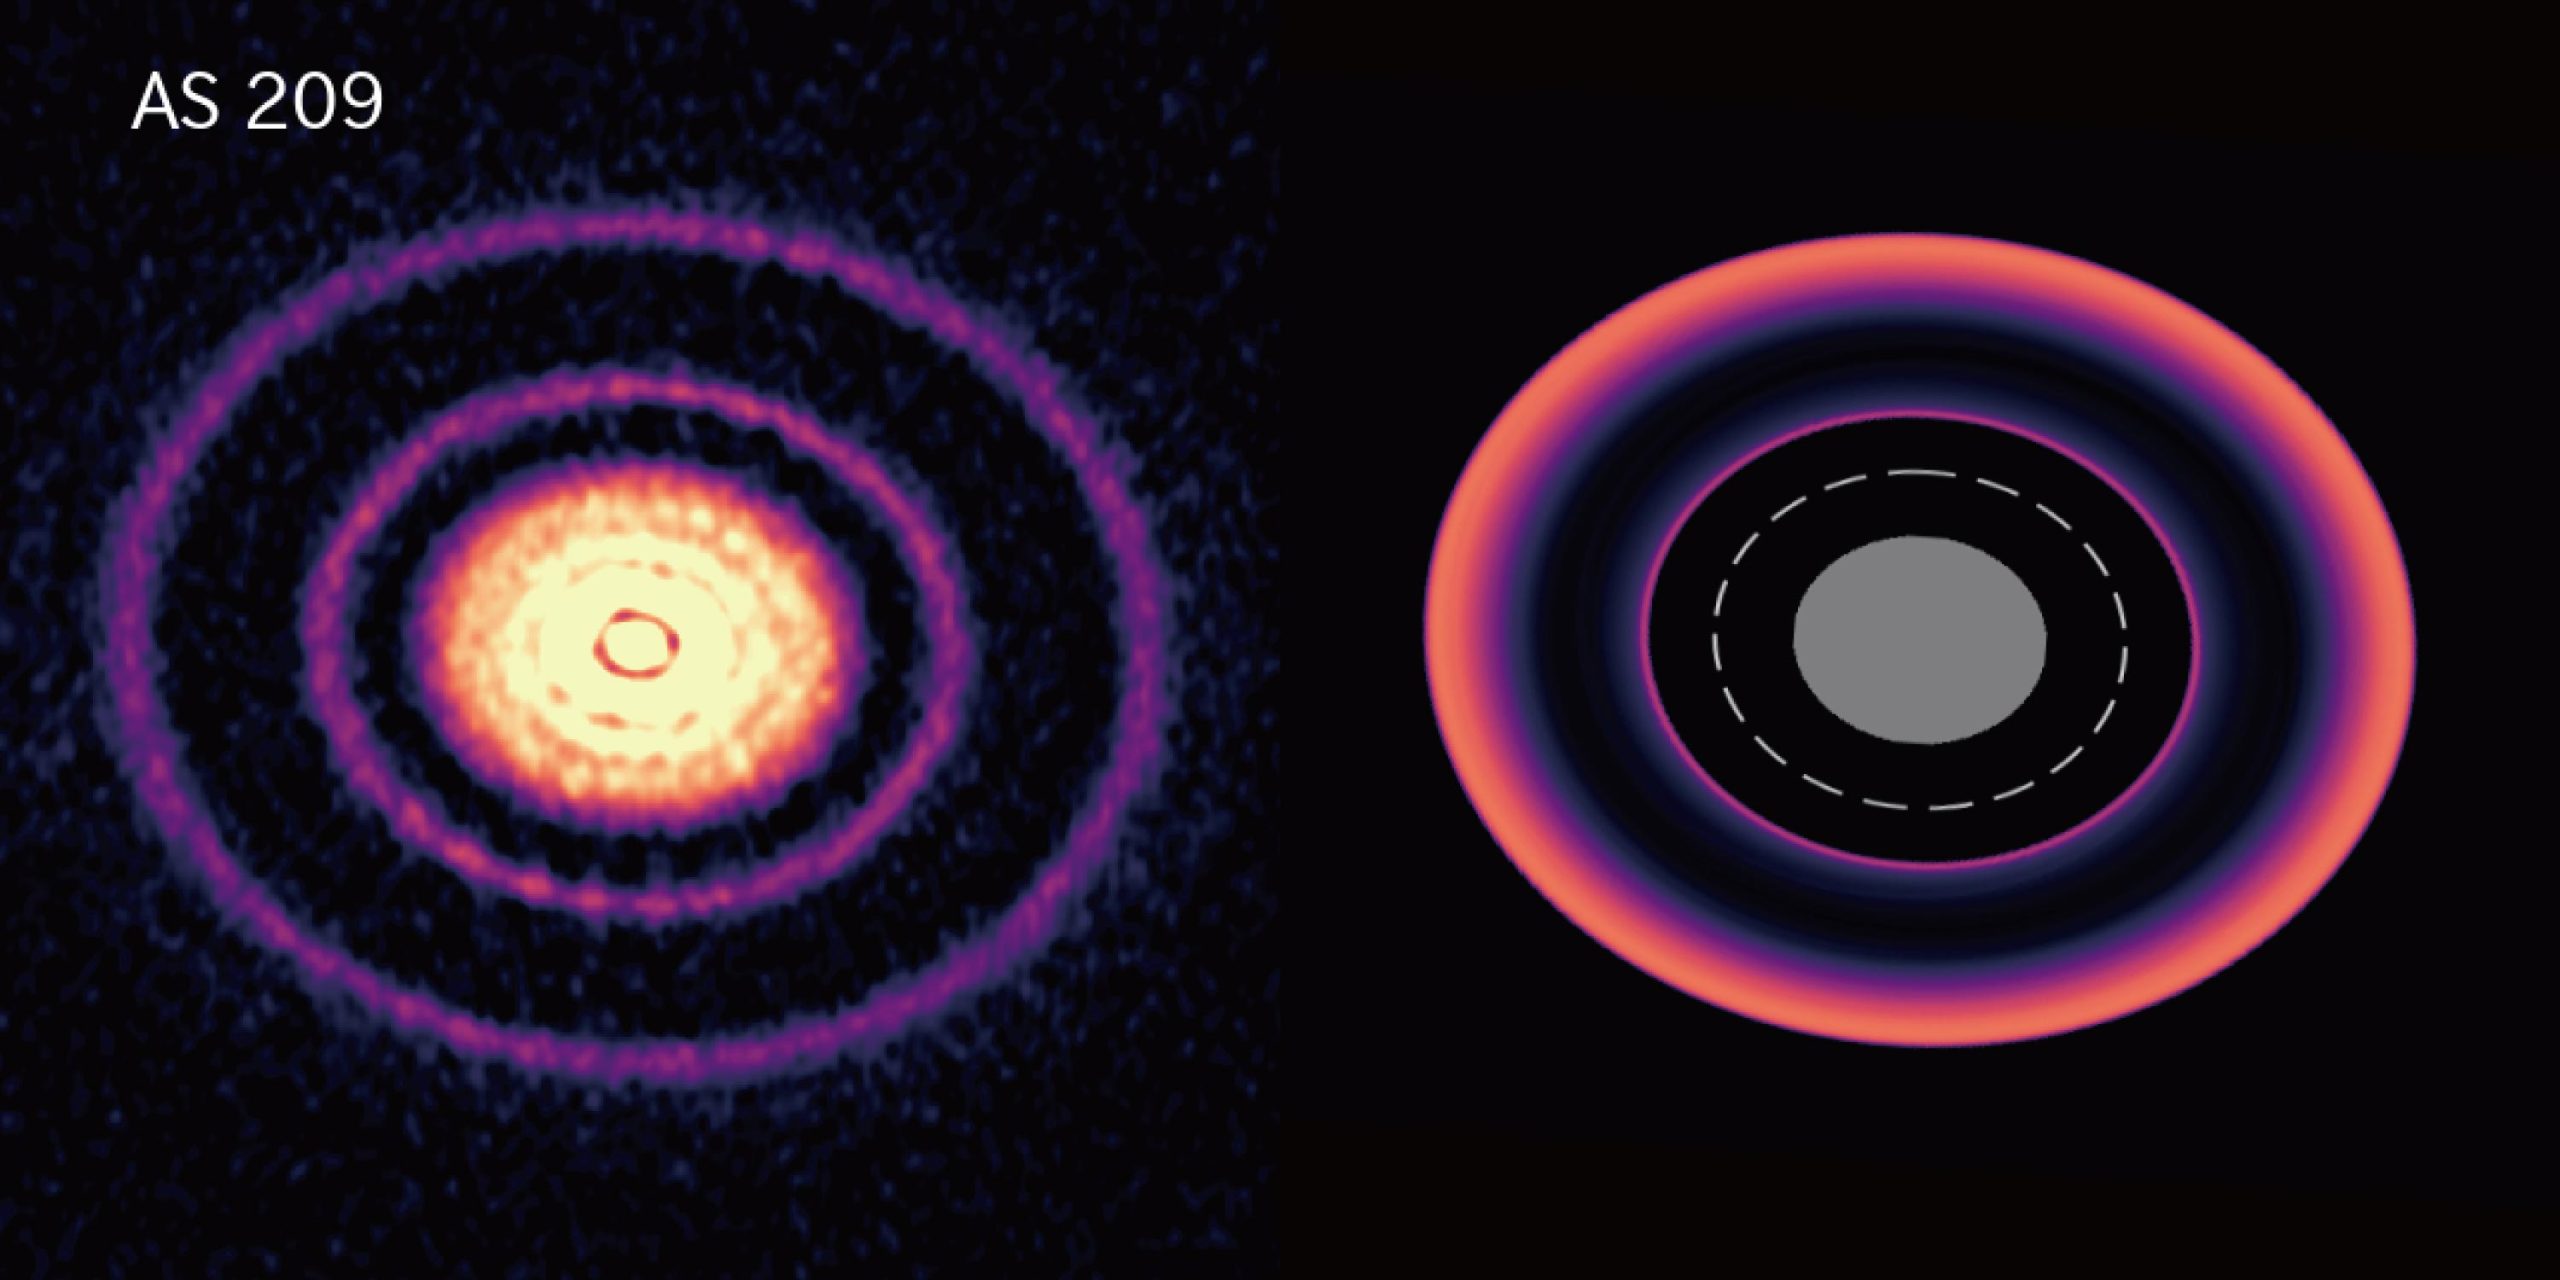 由ALMA观测到的原行星盘（左），以及由ATRUI II模拟得到的行星迁移期间的原行星盘（右）。模拟中的虚线代表行星的轨道，灰色区域表示模拟的计算域没有覆盖的区